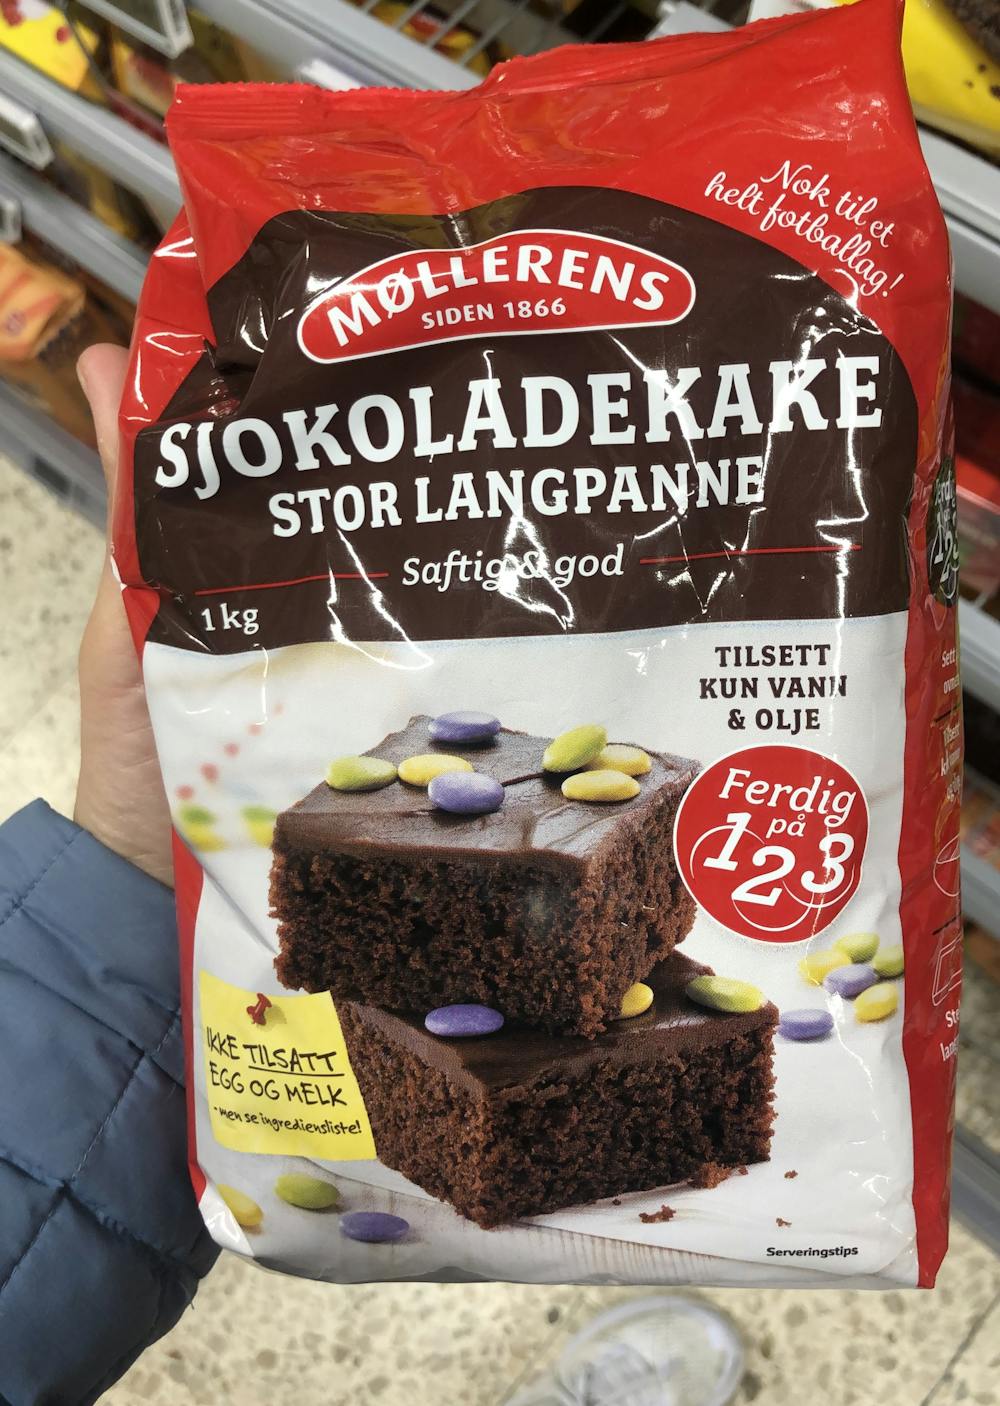 Sjokoladekake stor langpanne, Møllerens